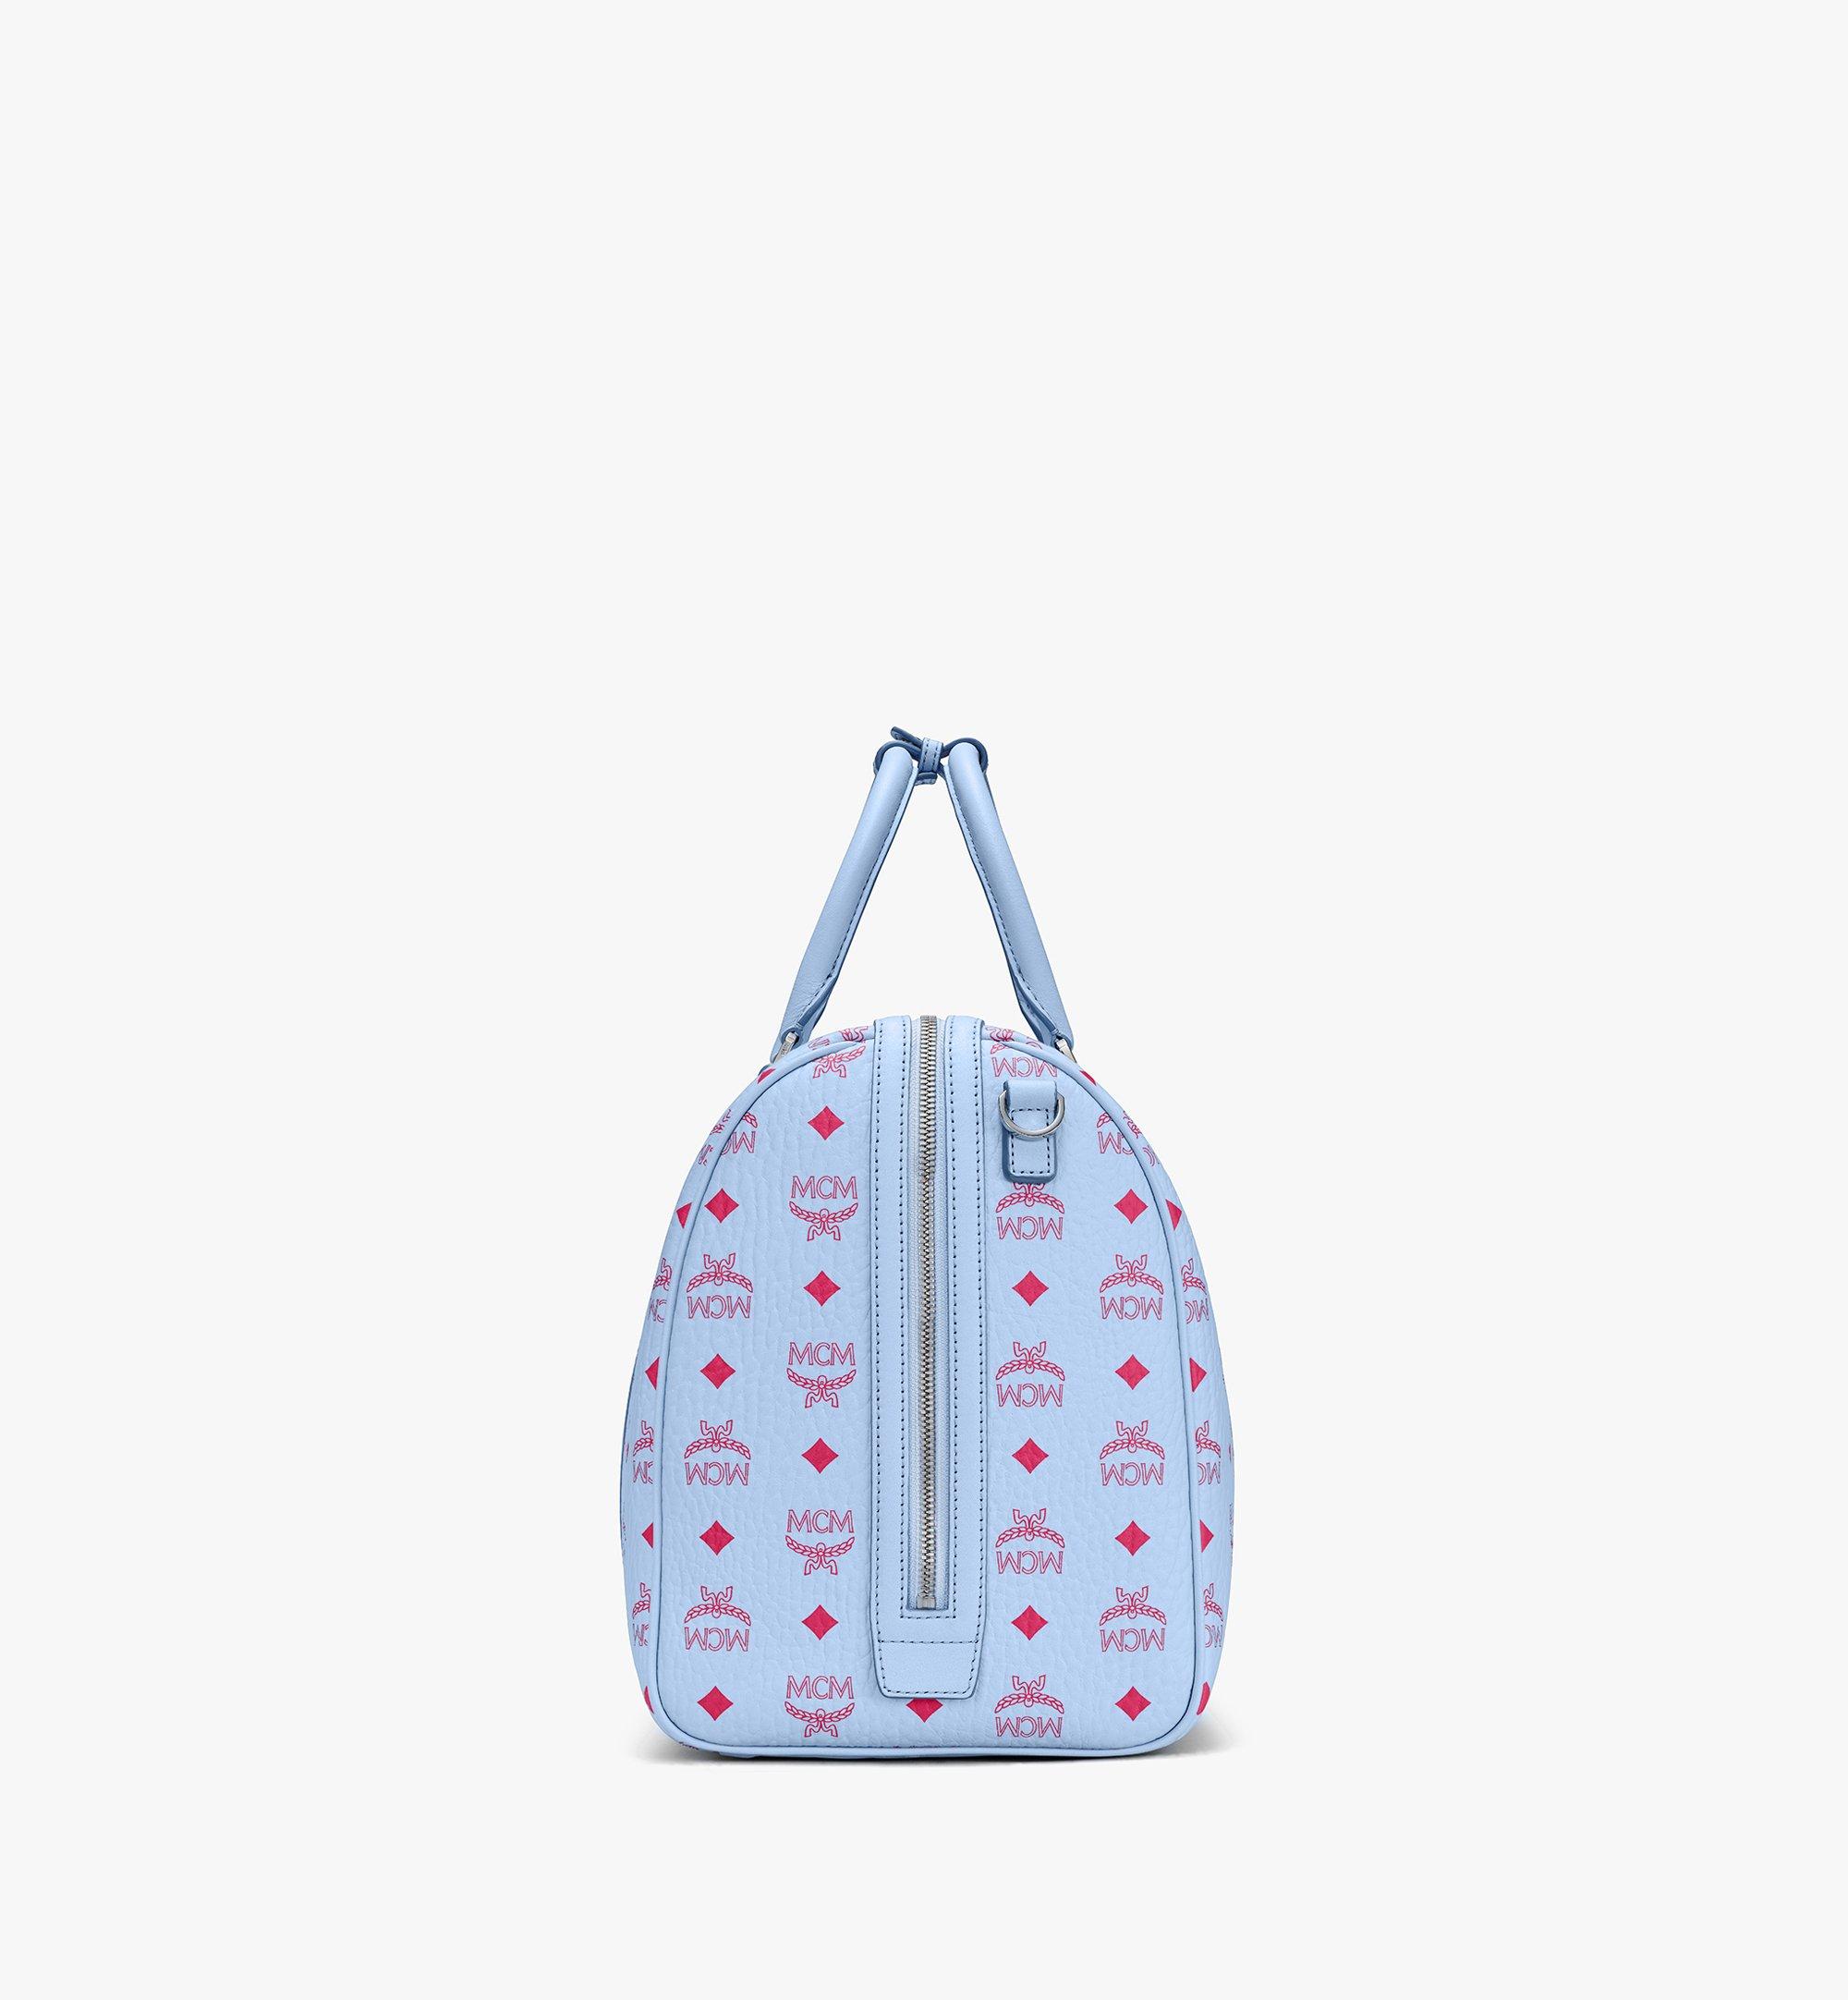 45cm / 17.7 Traveler Weekender Bag in Visetos Blue